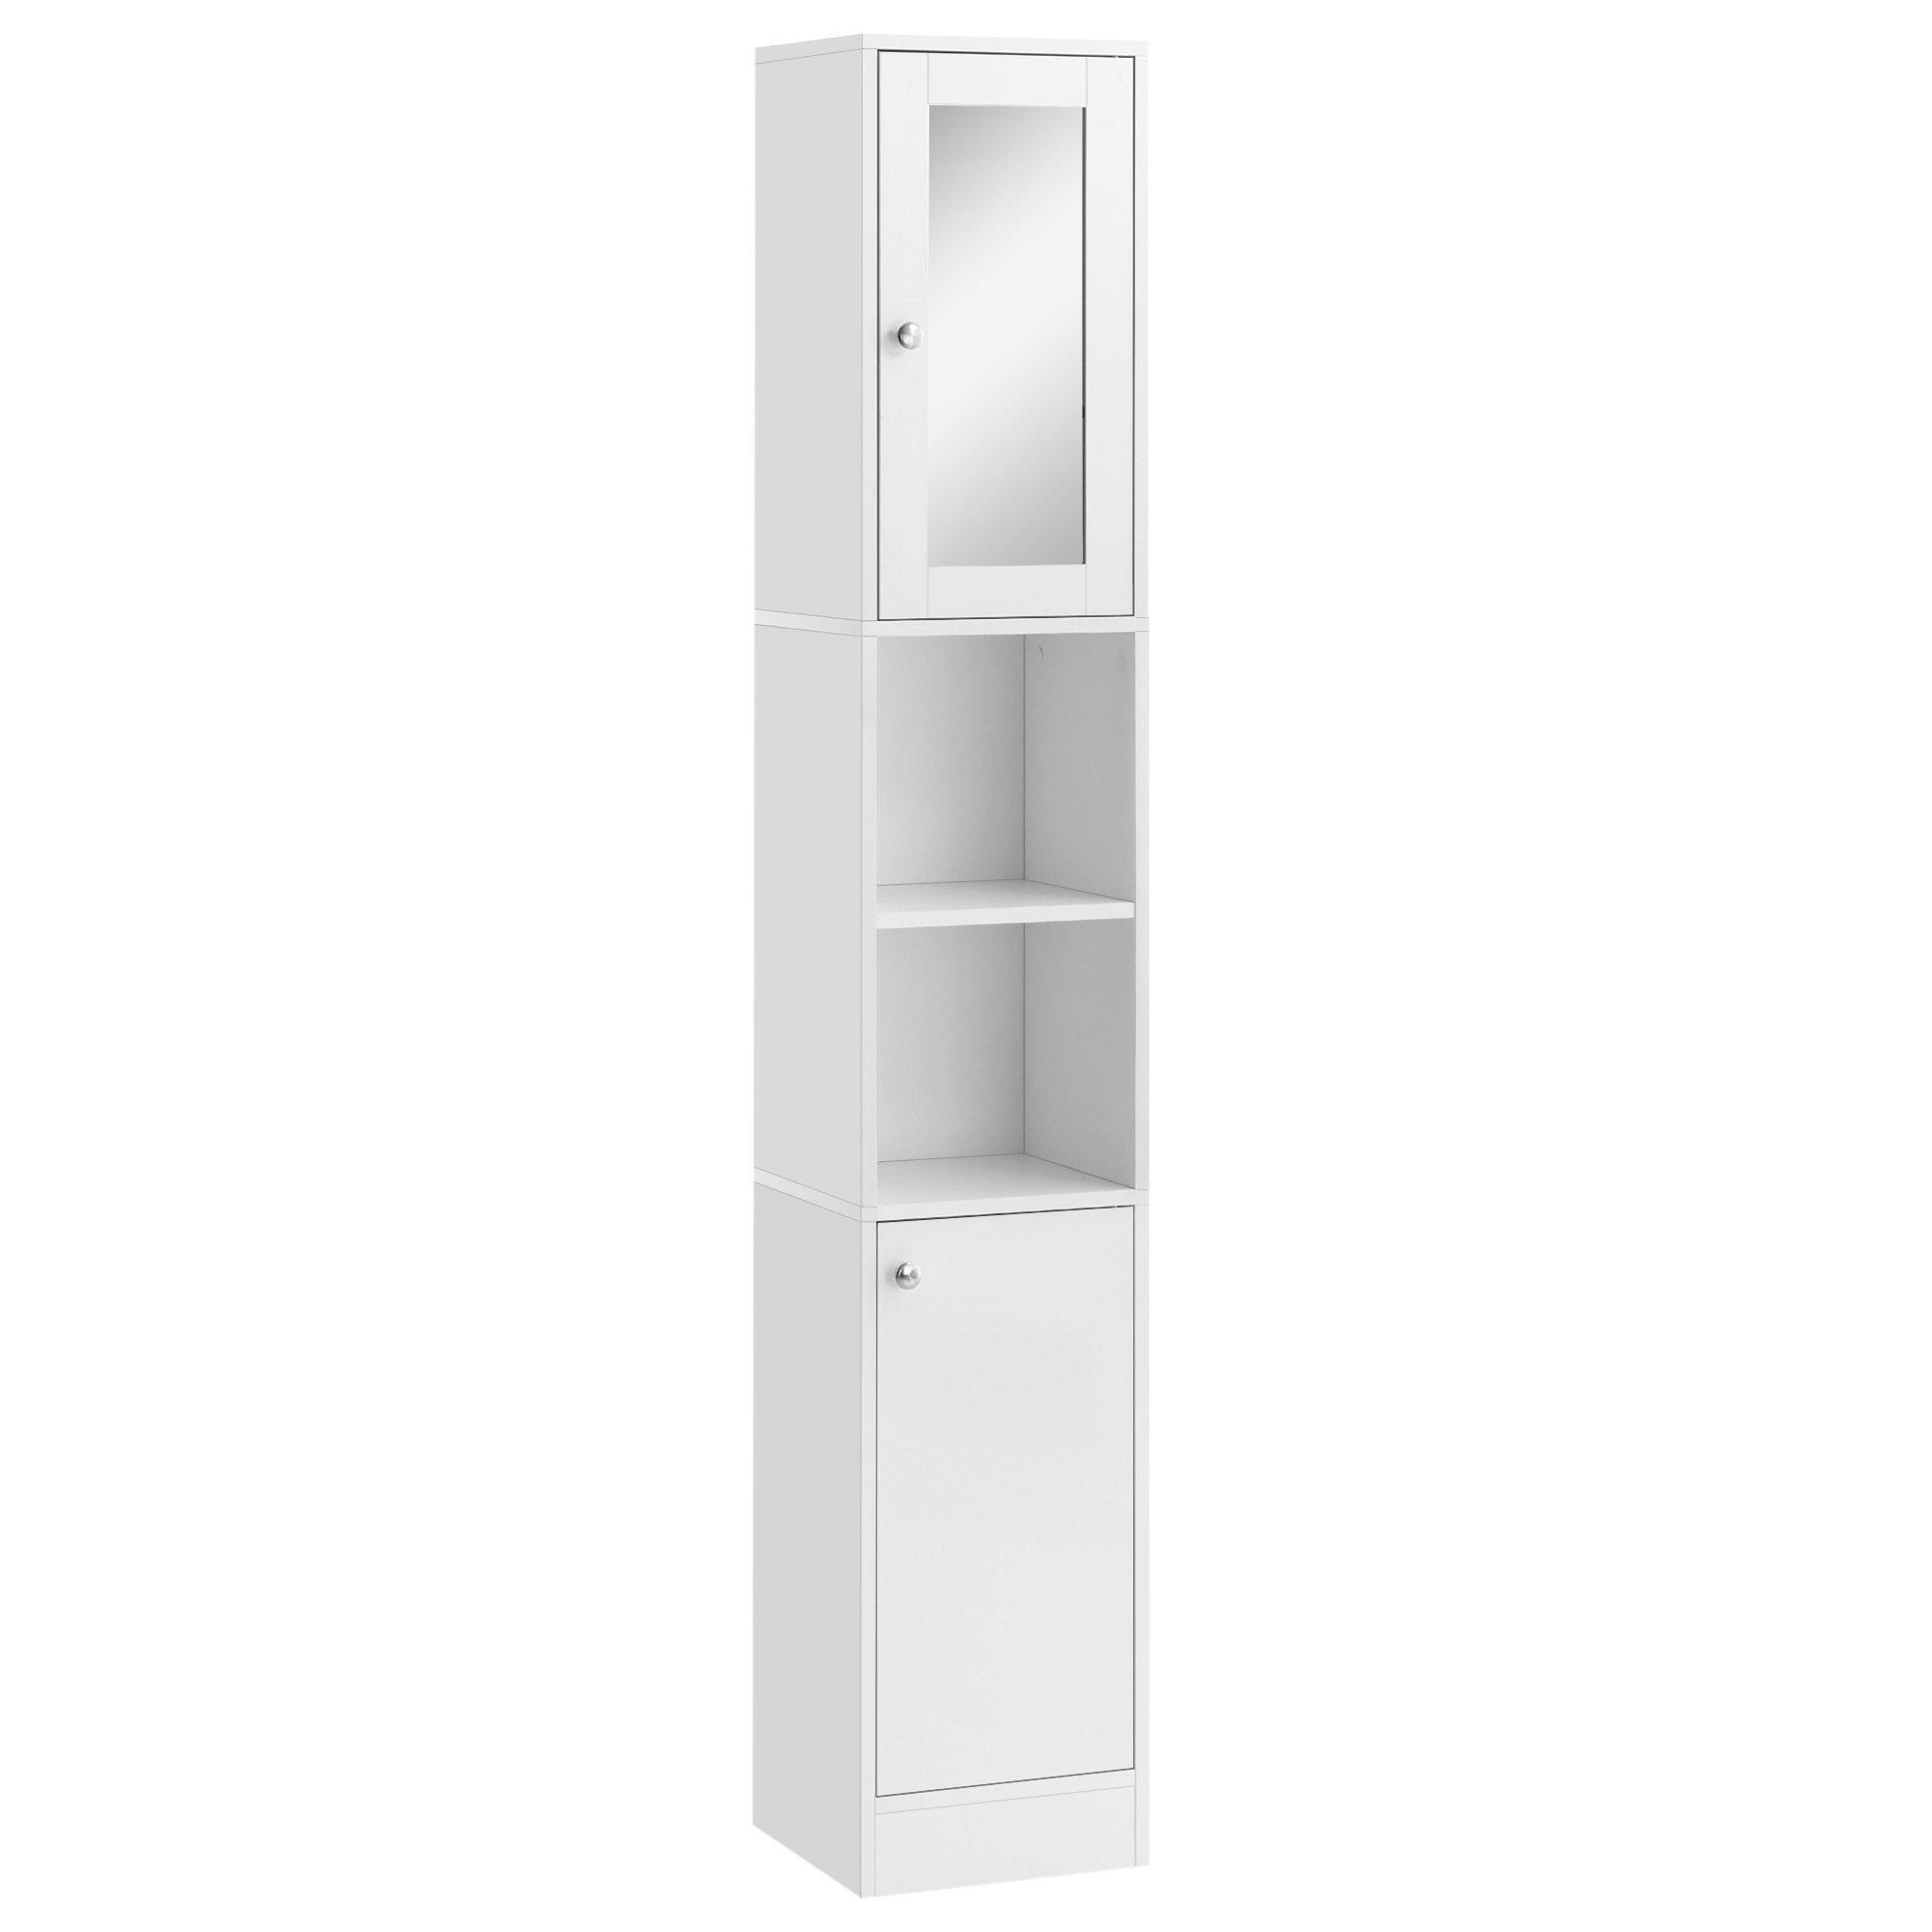 Bathroom Floor Cabinet Narrow Storage Cabinet with Mirror Adjustable - image 1